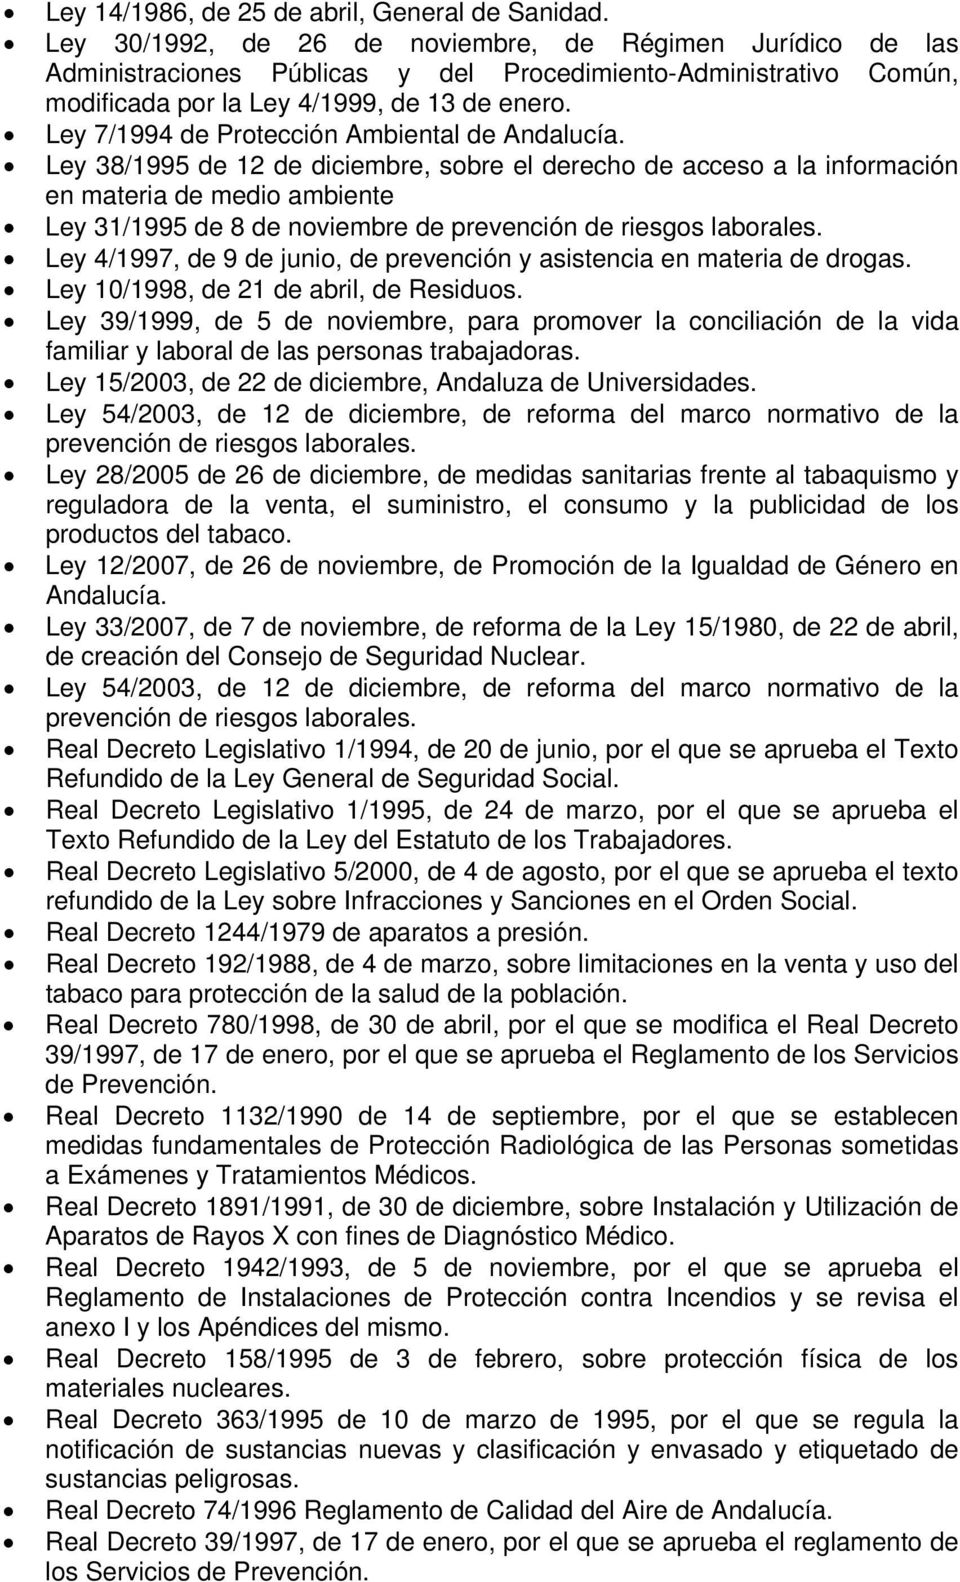 Ley 7/1994 de Protección Ambiental de Andalucía.